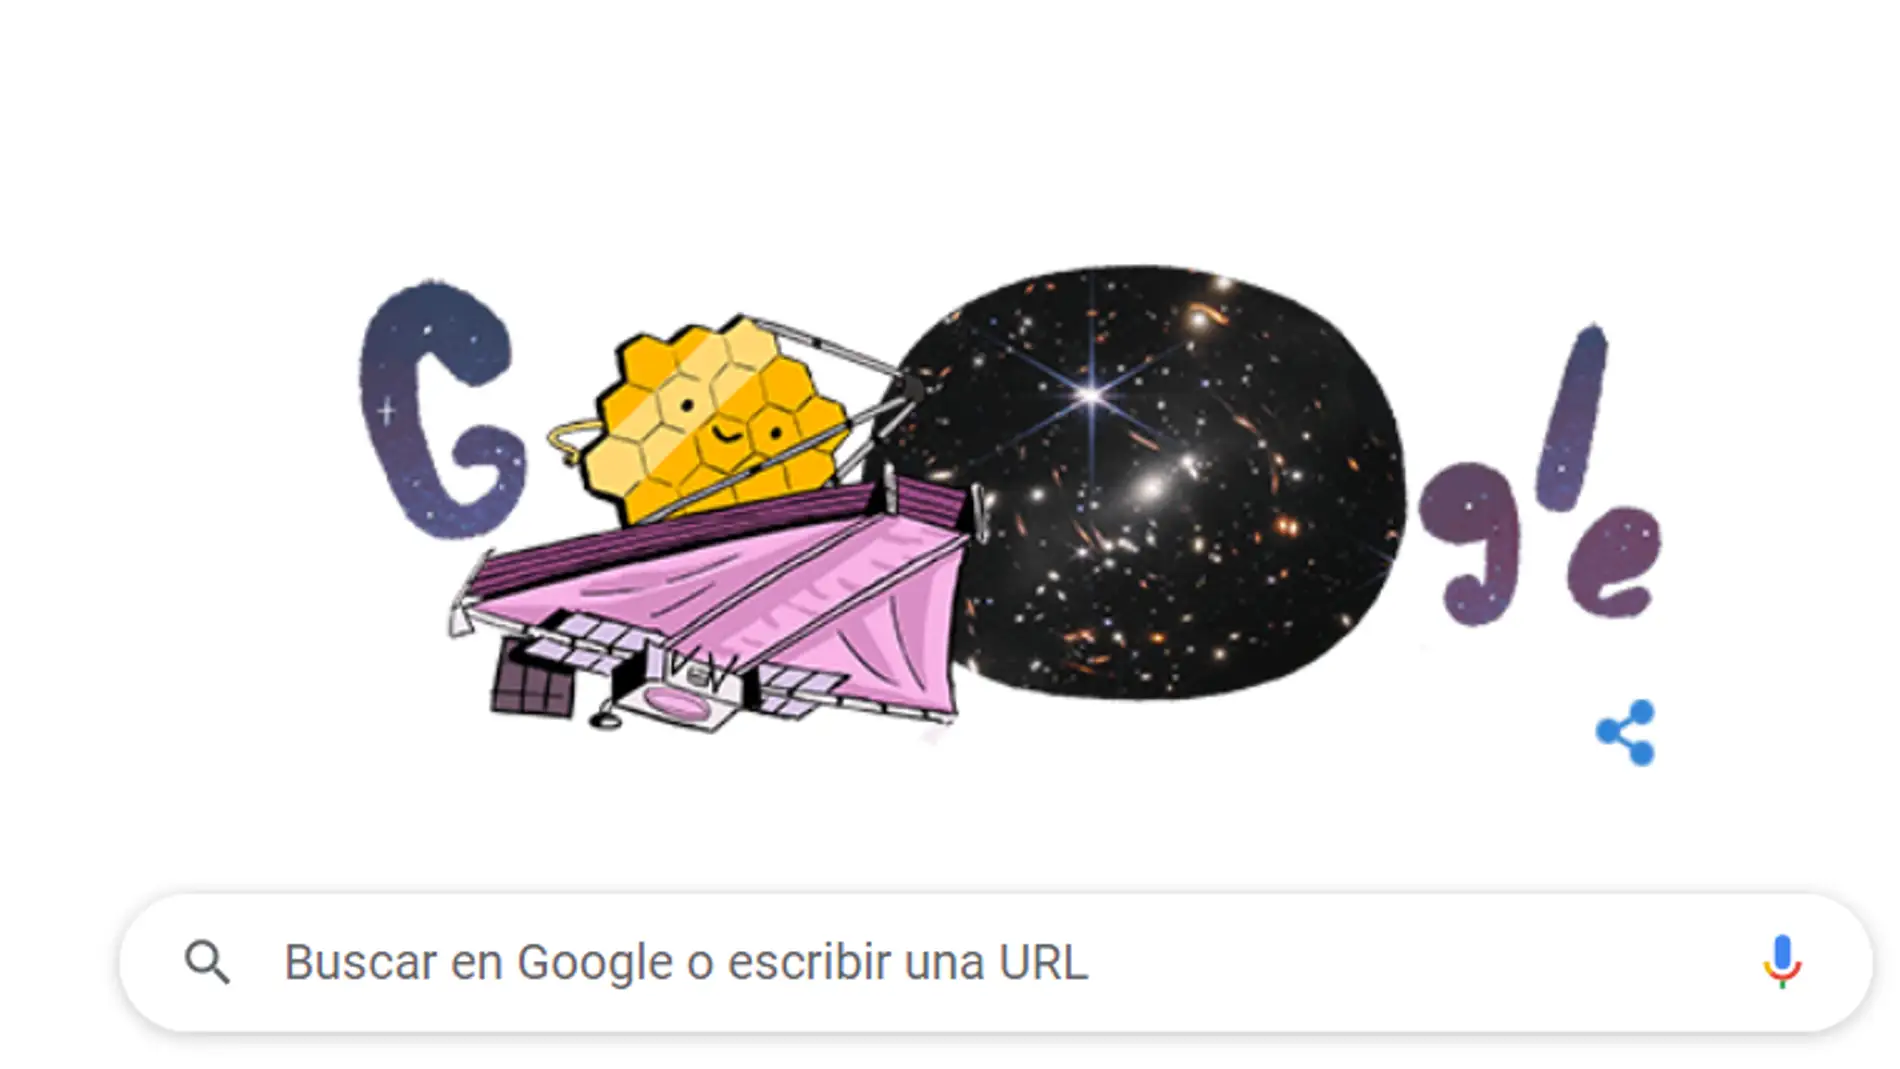 Google dedica su doodle a las imágenes del telescopio James Webb